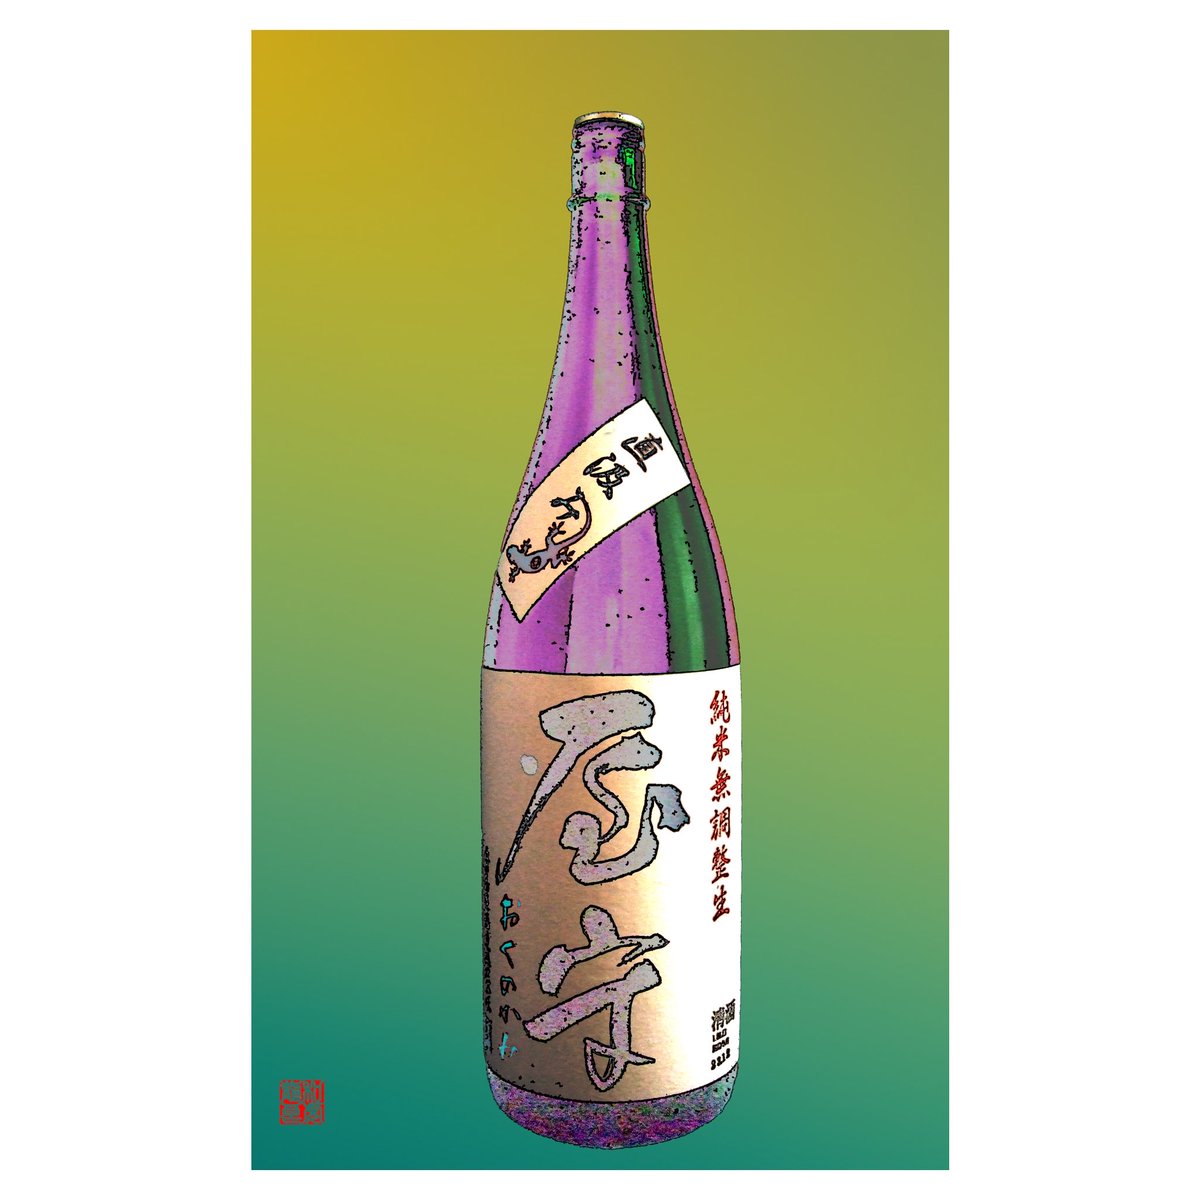 test ツイッターメディア - お気に入りの日本酒をイメージで
あらわしてみよう！No.20

屋守　純米生 無調整生「直汲み」
(初めて飲んだ時のボトルデザインで・・・)

「直汲み」だからこそできる、口に入れた瞬間口中にはじけるガス感はたまりません。

#日本酒 #酒 #sake #nihonshu #屋守 #okunokami #純米 #純米酒 https://t.co/lPNXoAE2TN